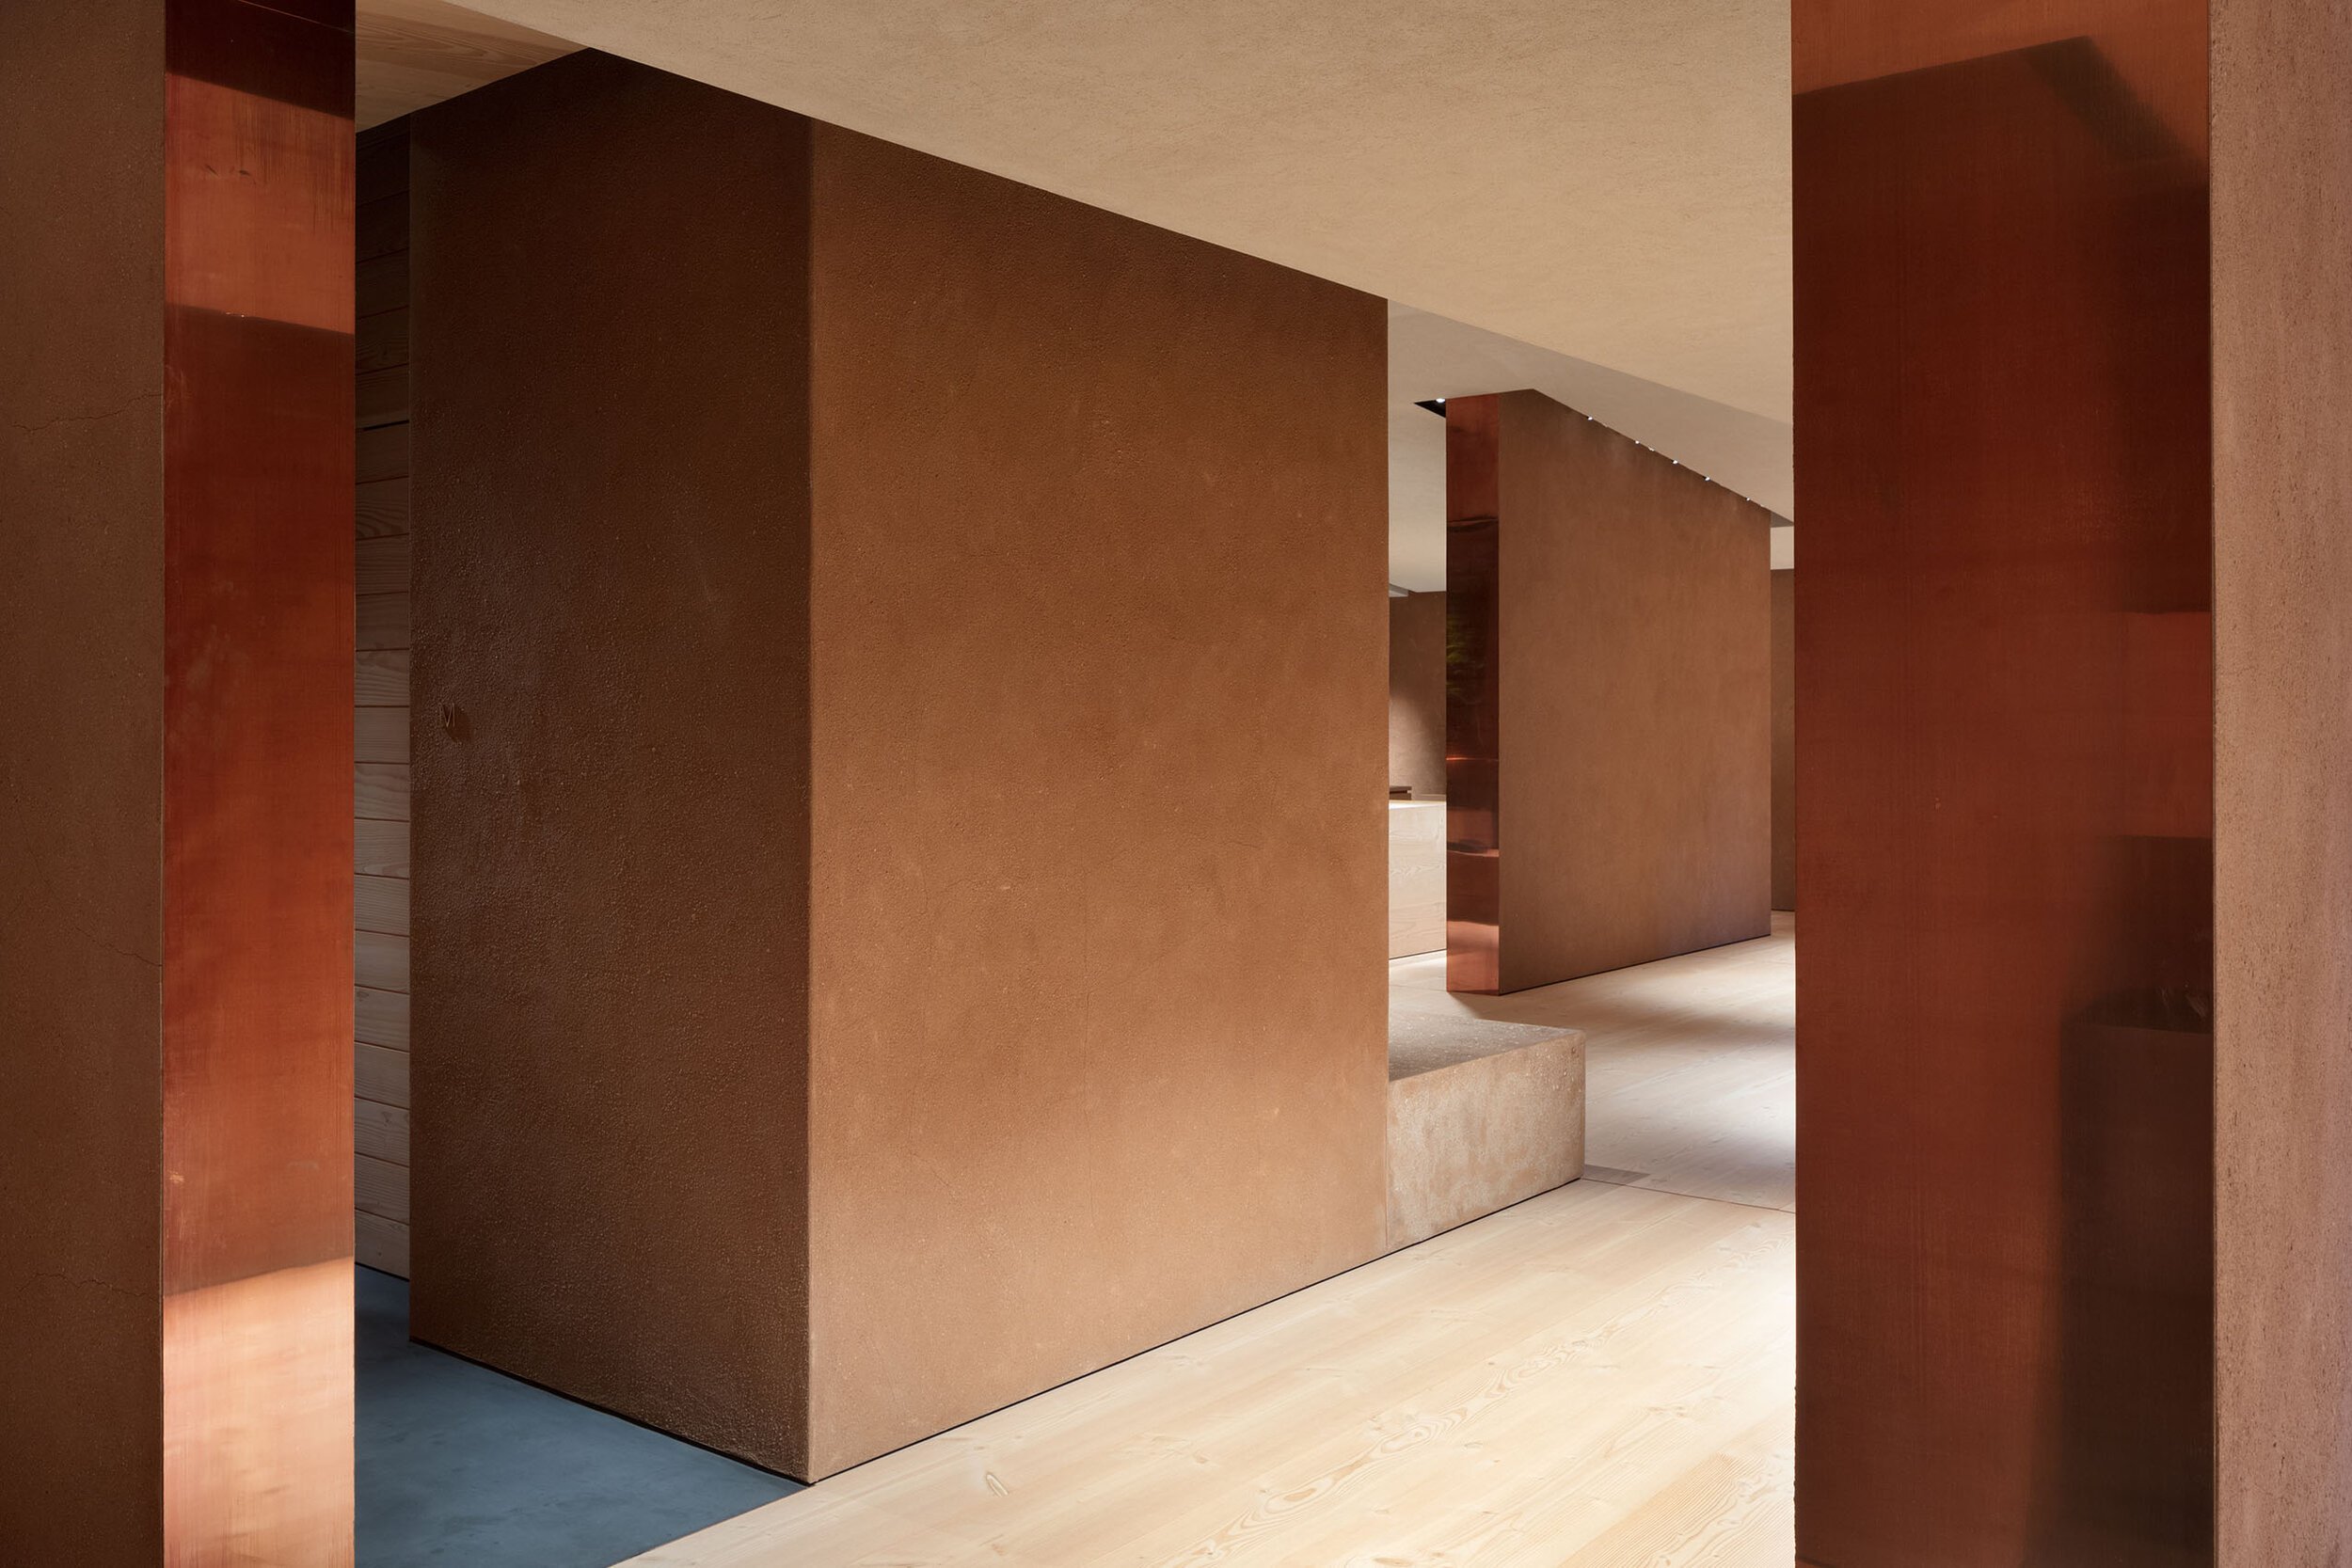  TERUHIRO YANAGIHARA STUDIOの柳原照弘がデザインした1616/arita japan 有田ショールーム。壁の見切りは銅板 